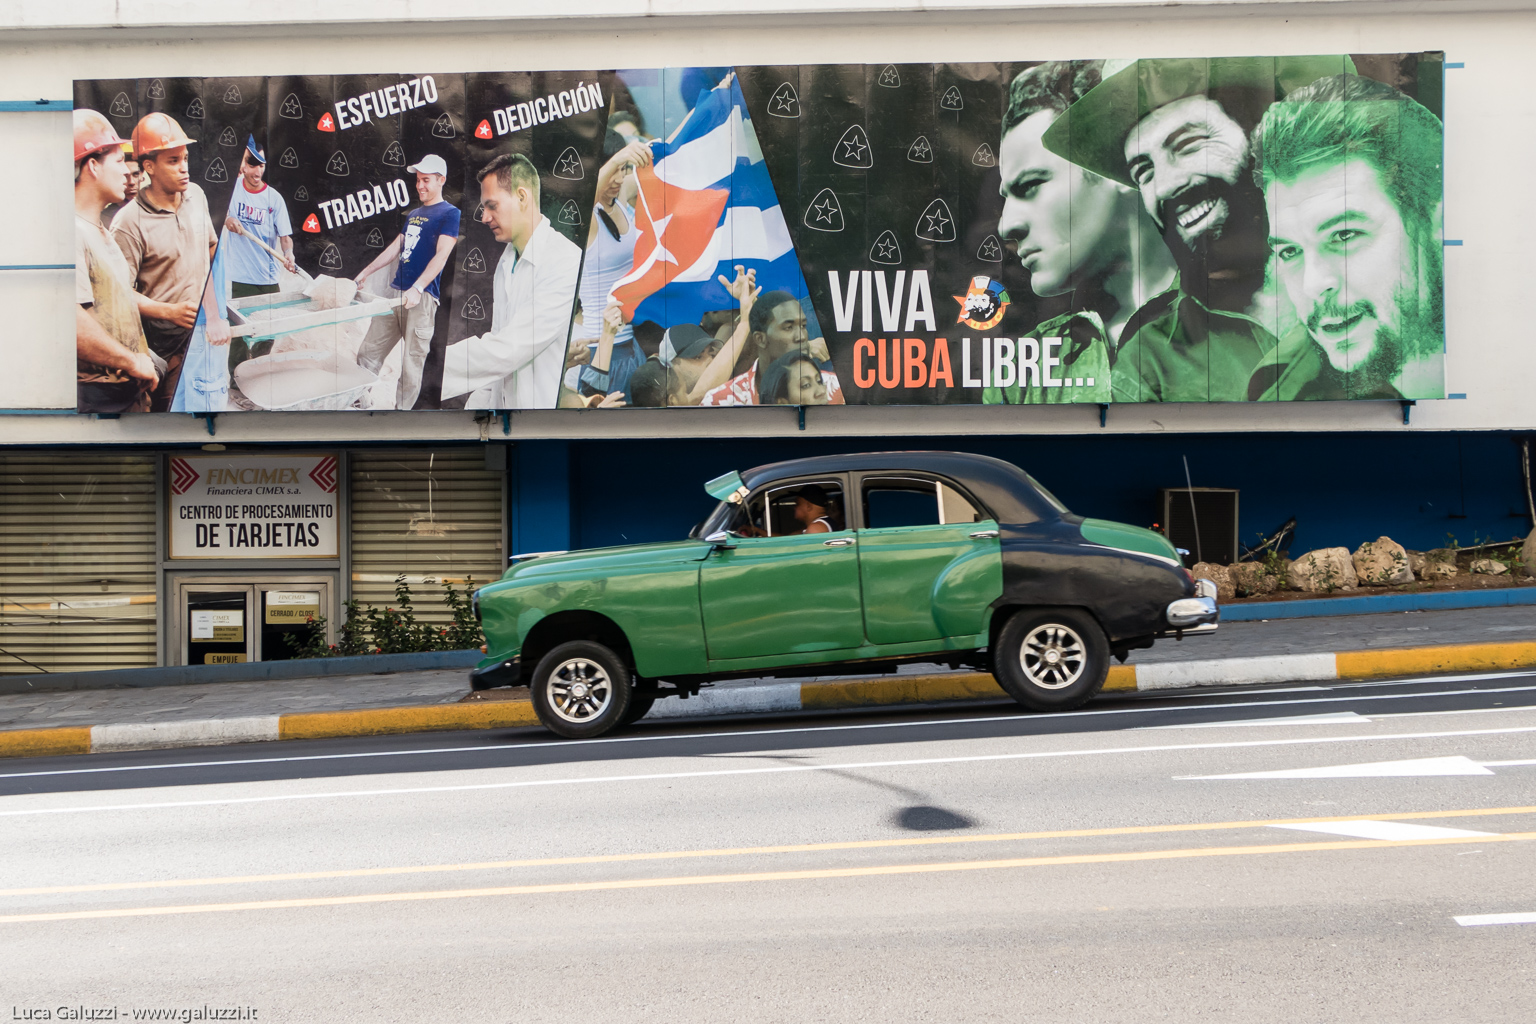 Viva Cuba libre... L'Avana